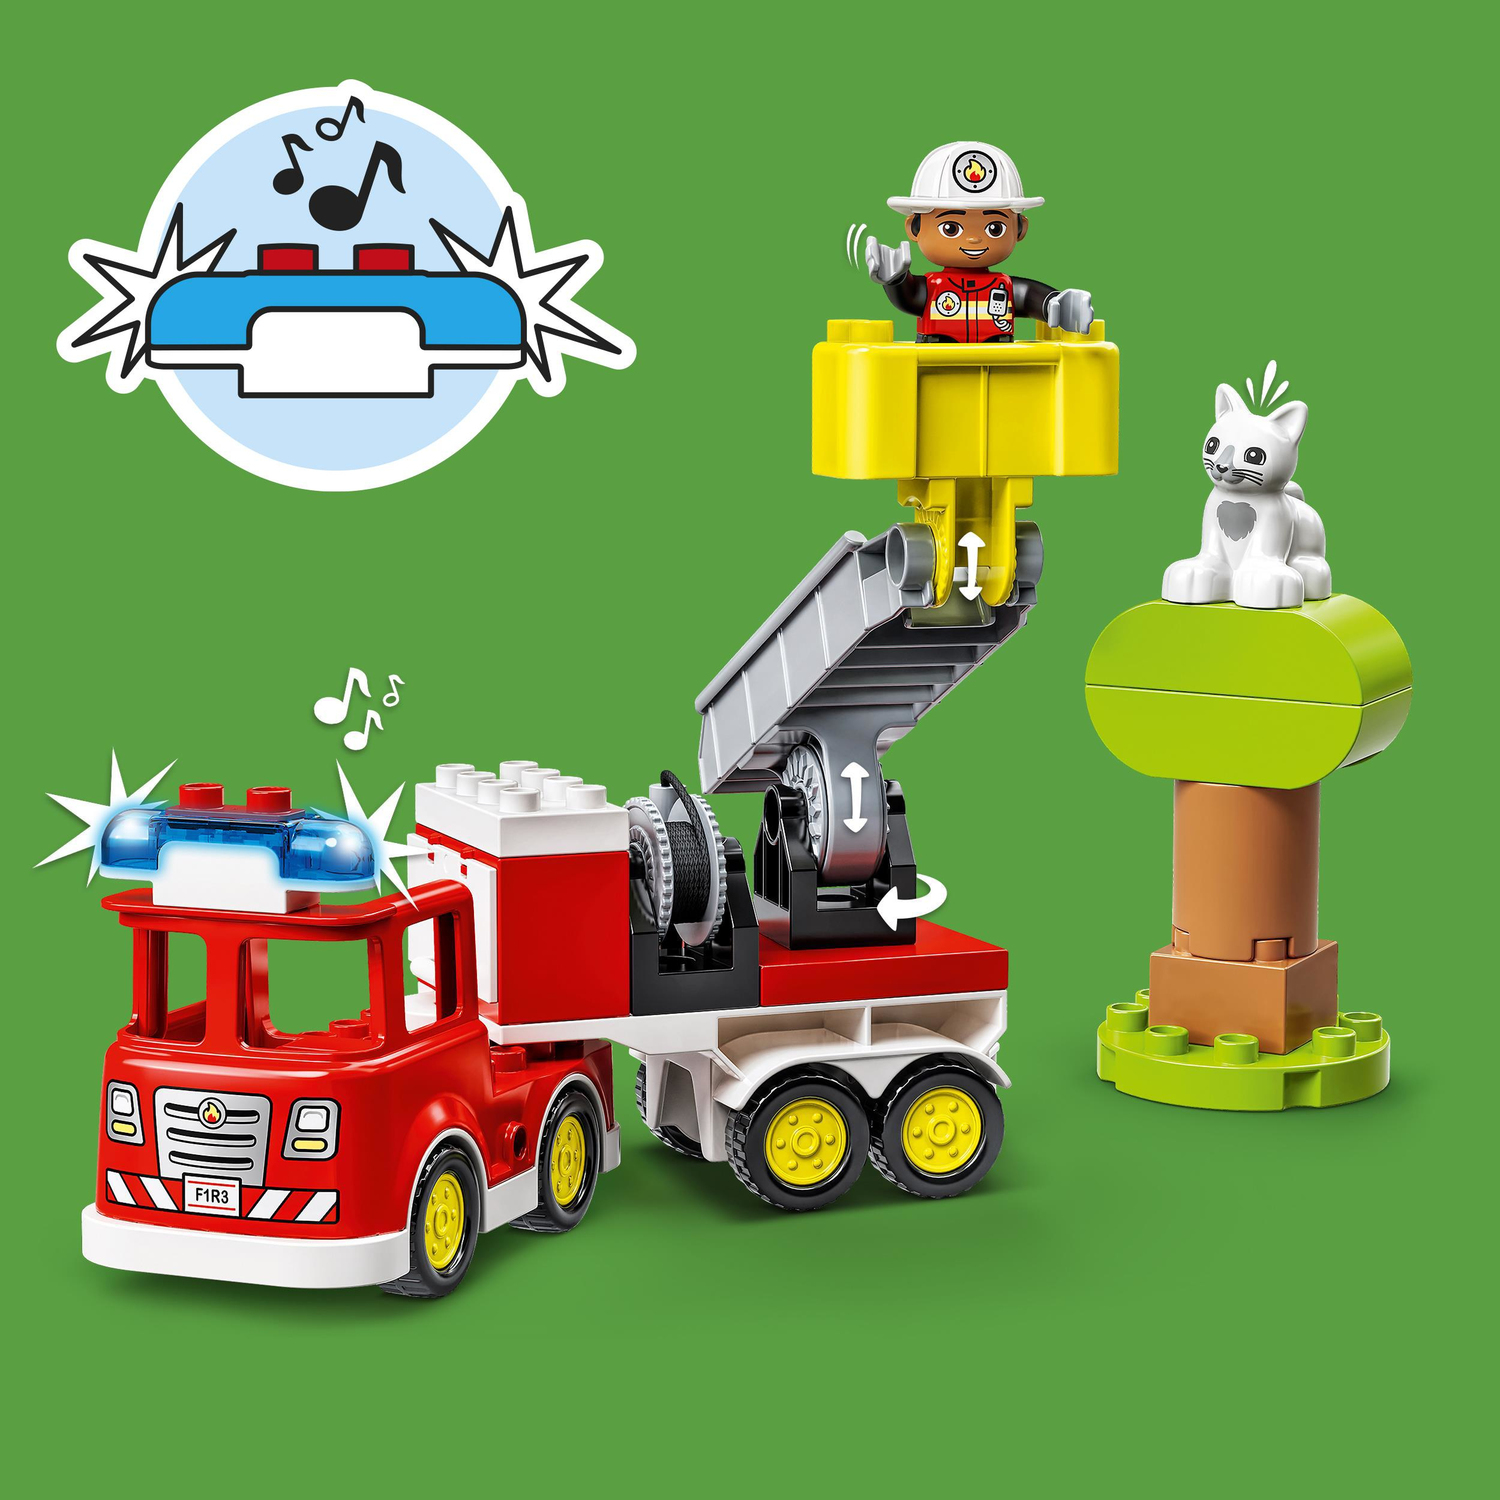 LEGO DUPLO Town Fire Truck 10969 – Juego de juguetes de construcción para  niños y niñas preescolares de 2 a 5 años (21 piezas) – Yaxa Store